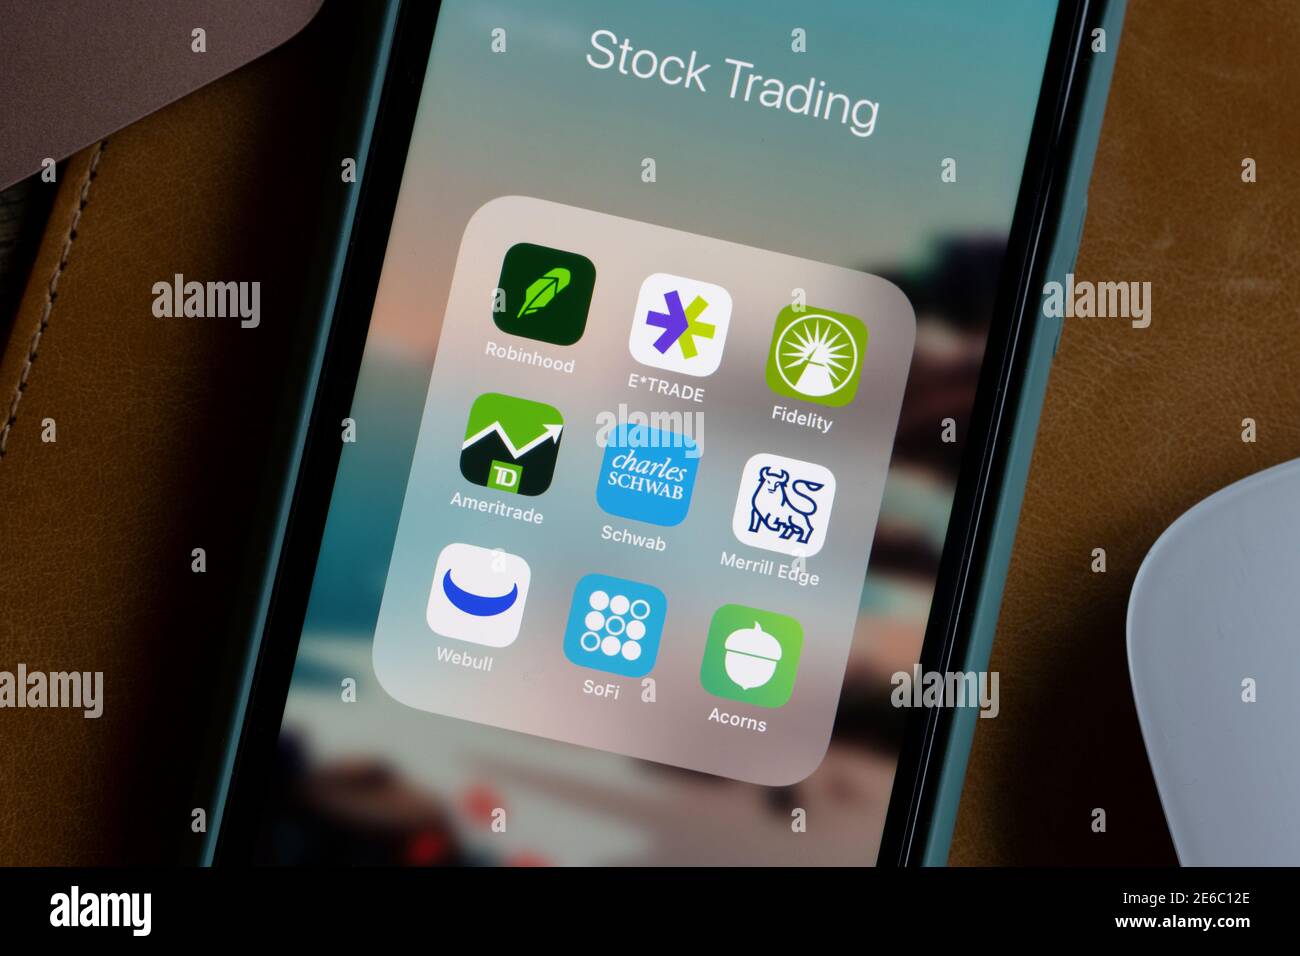 Des applications de trading d'actions variées sont visibles sur un iPhone - Robinhood, E-trade, Fidelity, TD Ameritrade, Schwab, Merrill Edge, Webull, SOFI et Acorns. Banque D'Images